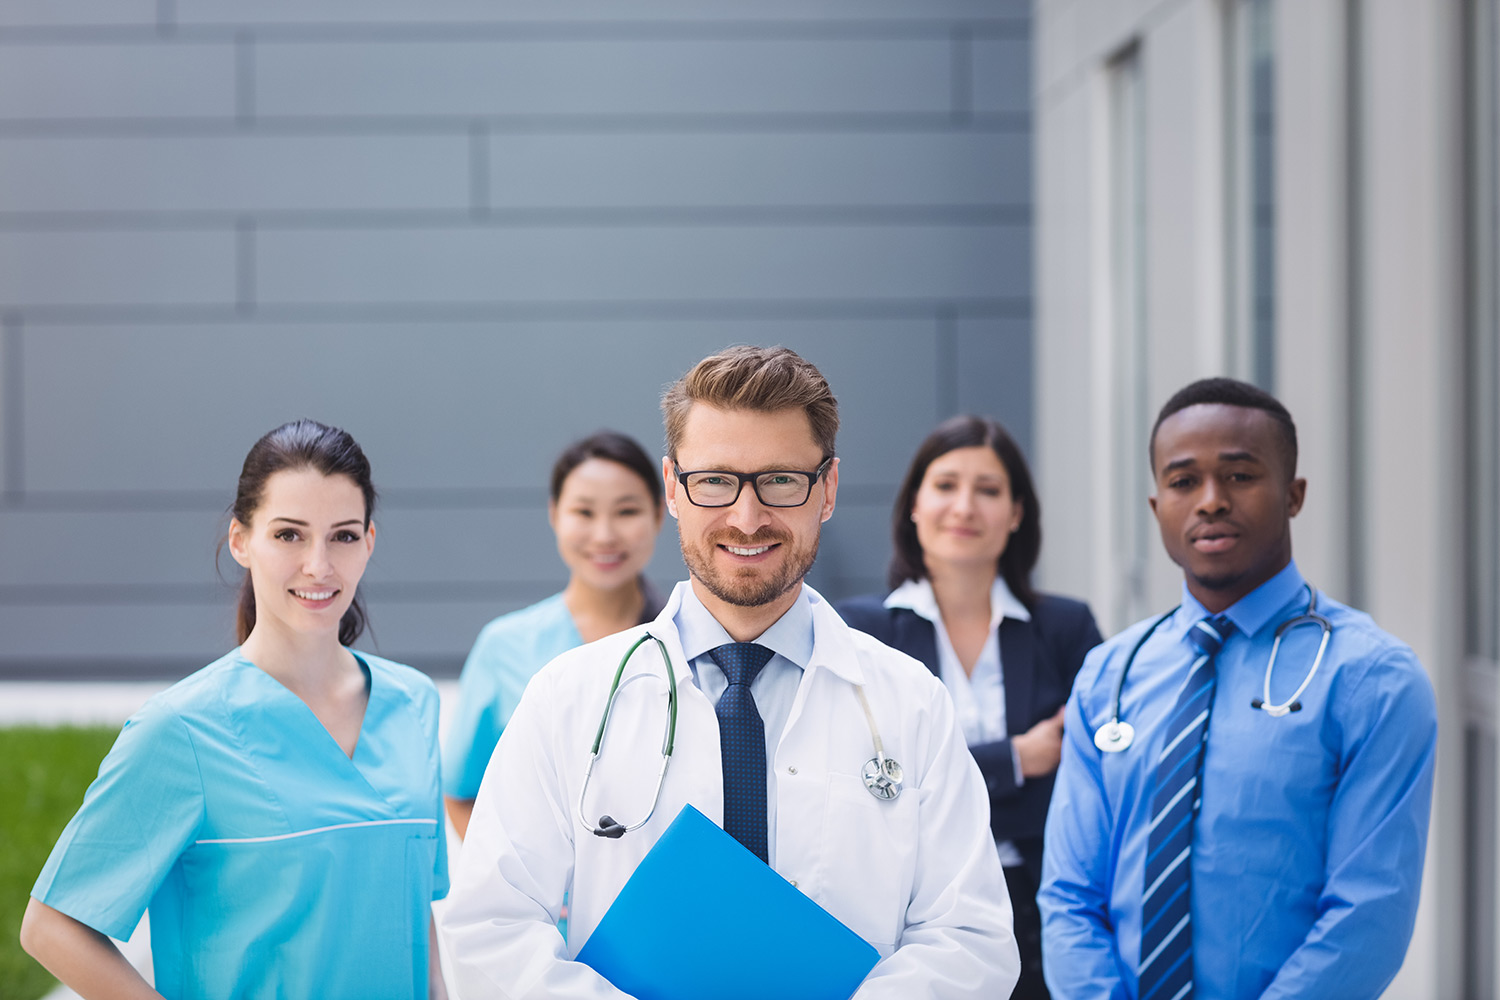 team-doctors-standing-together-hospital-premises